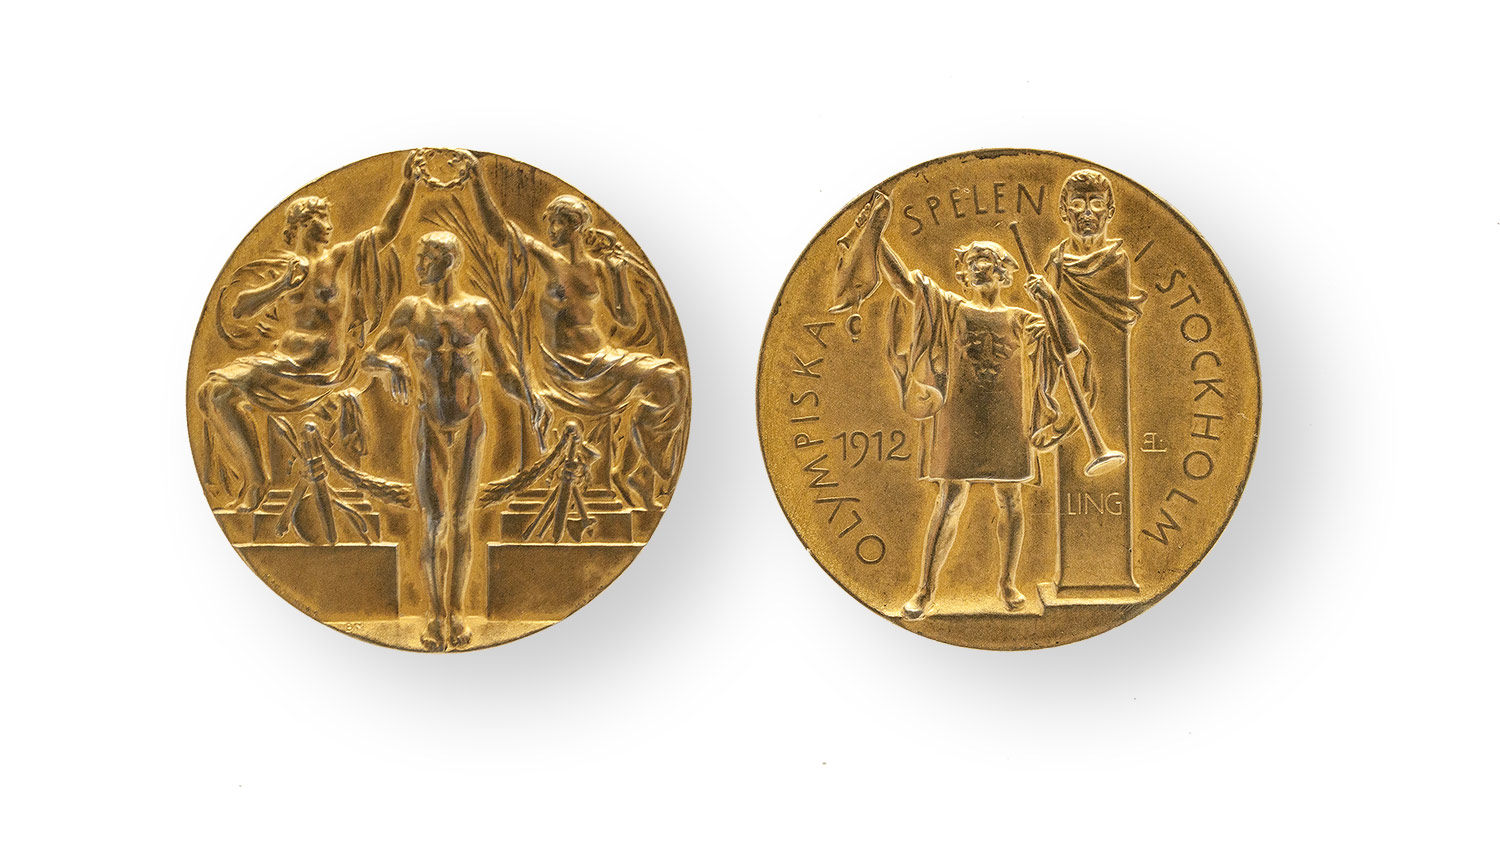 Goldene Medaille von den Olympischen Spielen 1912 in Stockholm